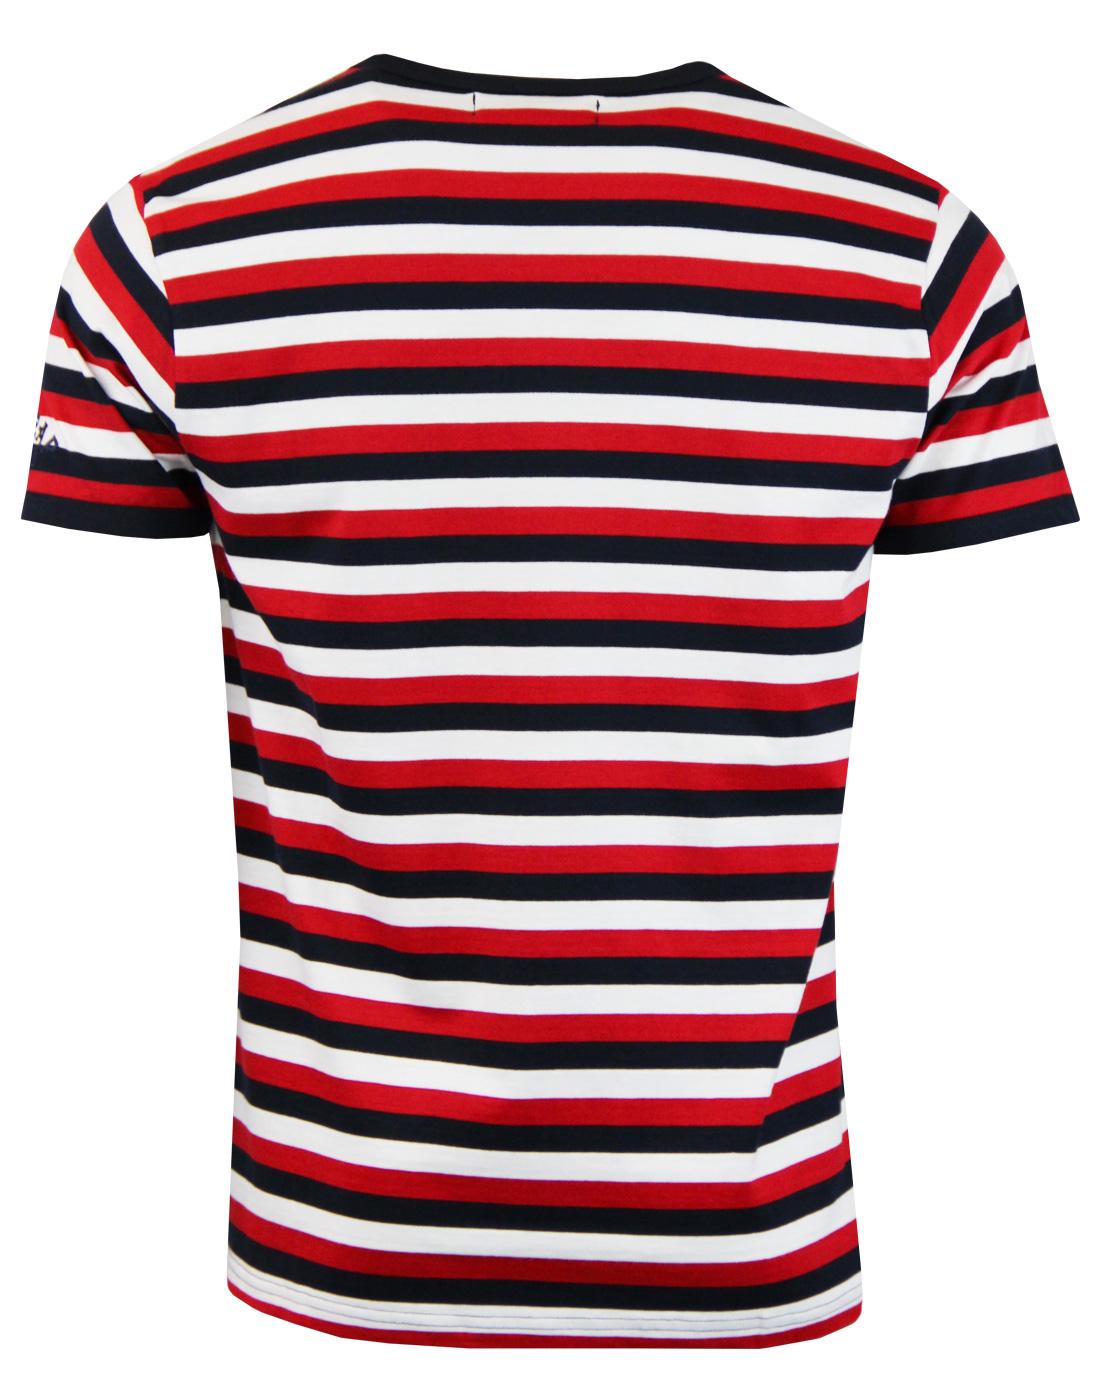 MADCAP ENGLAND Bande Men's Retro 60s Mod Tri-Stripe T-Shirt